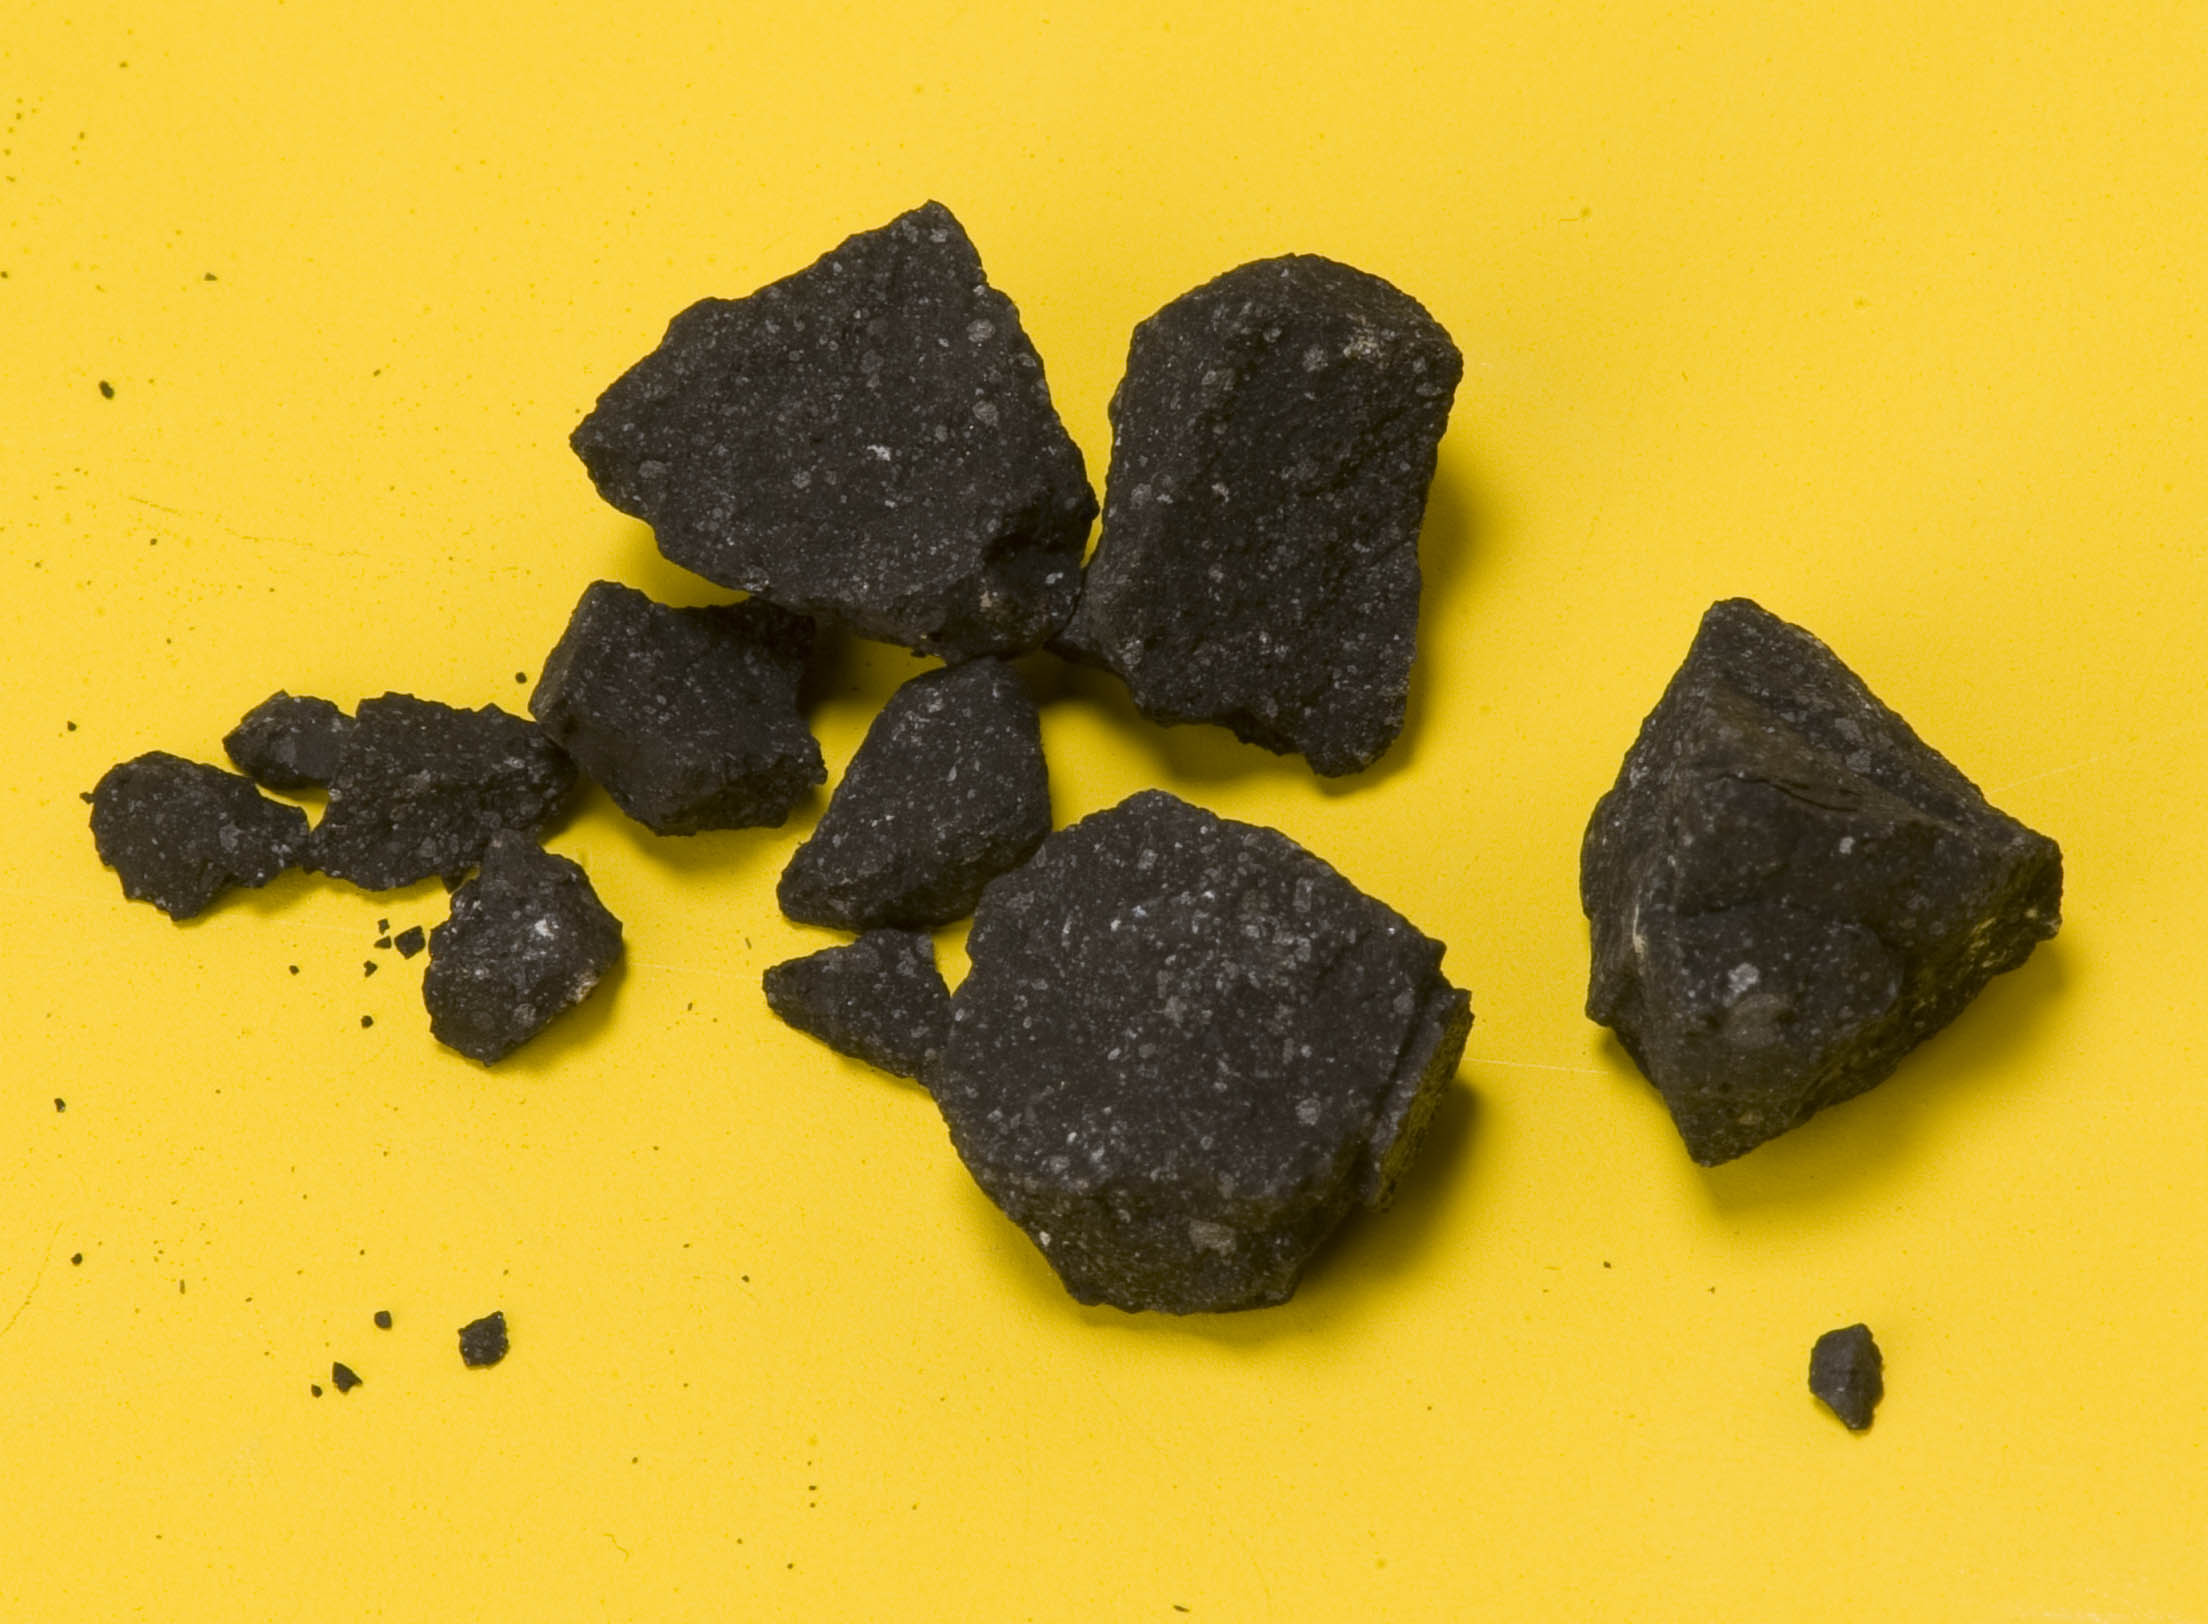 Sutter's Mill meteorite samples